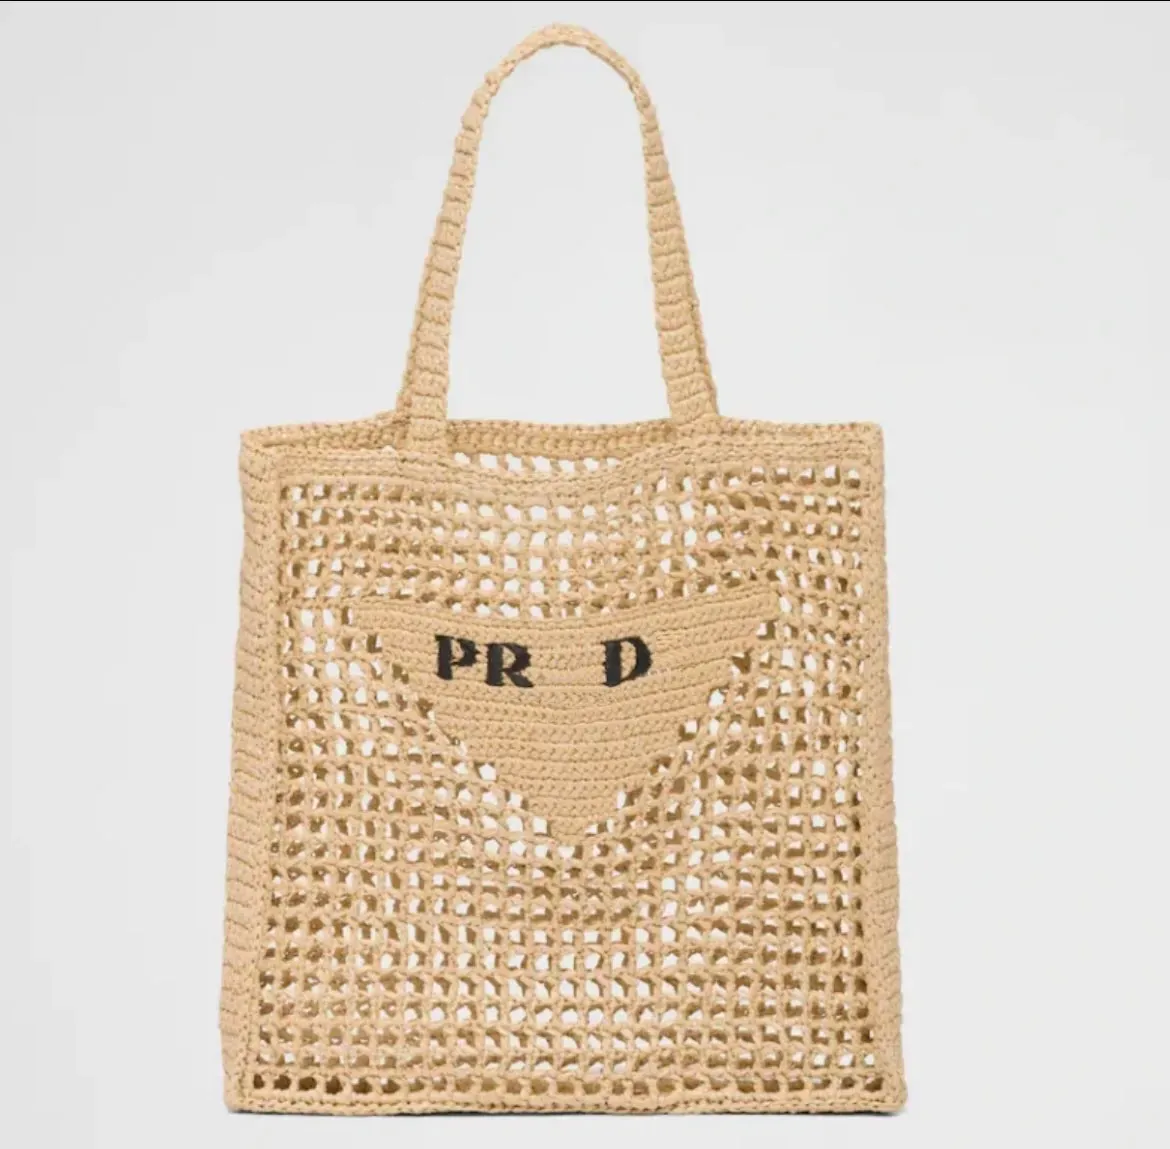 حقيبة مصممة أكياس الكتف حقيبة شاطئية أزياء لويزتيس حقيبة يد viutonitys